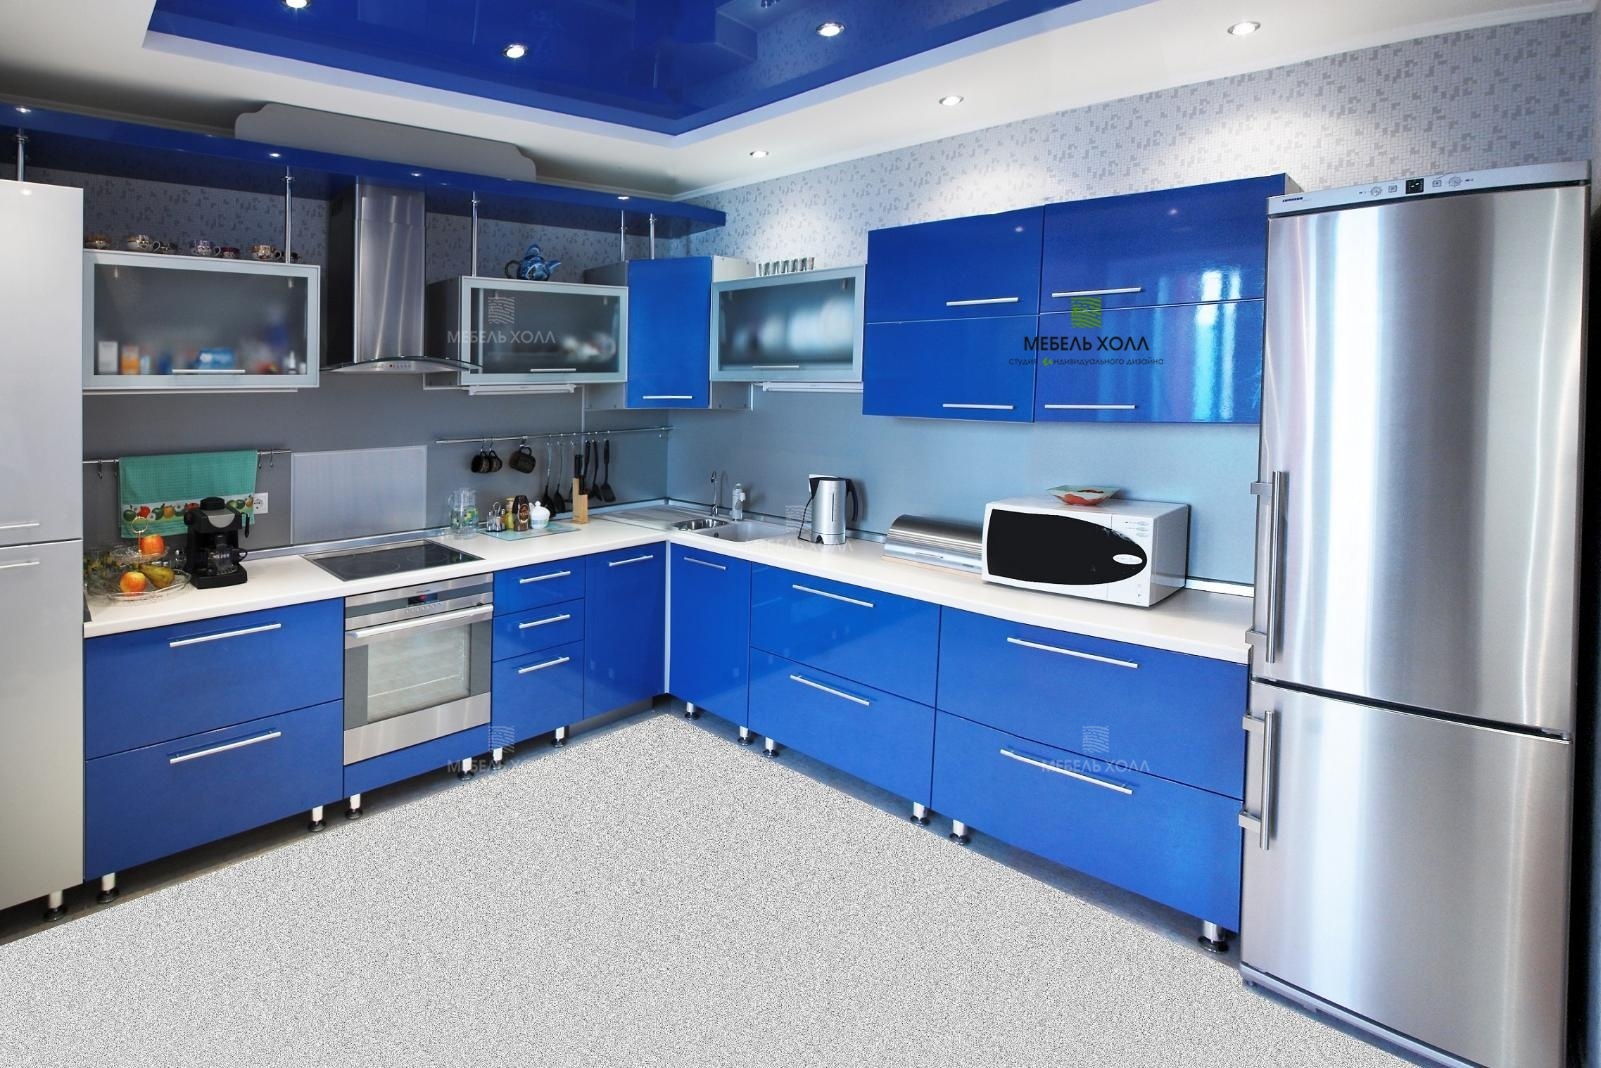 Современная кухня из глянцевого синего пластика, с навесными шкафчиками из стекла в алюминиевой раме